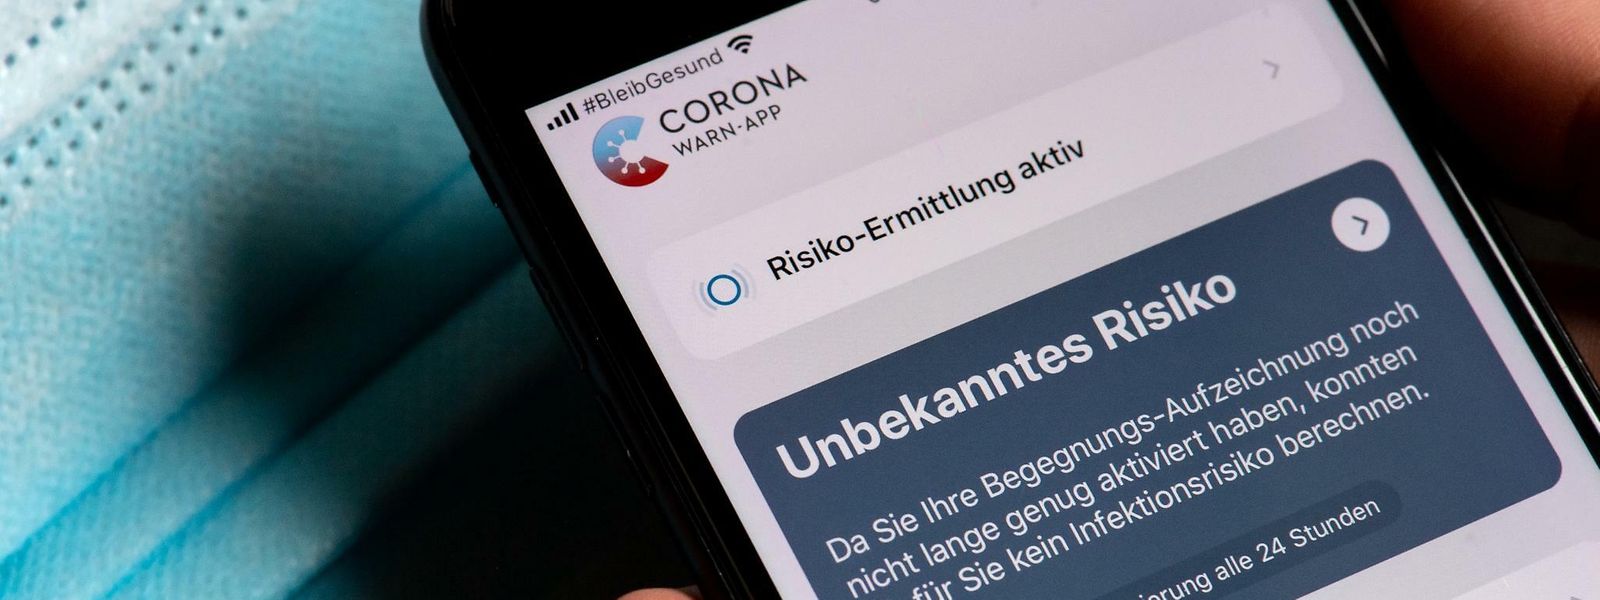 Selon l'éditeur de l'application «Corona warn-app», les coordonnées de l'utilisateur ne sont pas stockées de manière centralisée, mais uniquement sur les smartphones